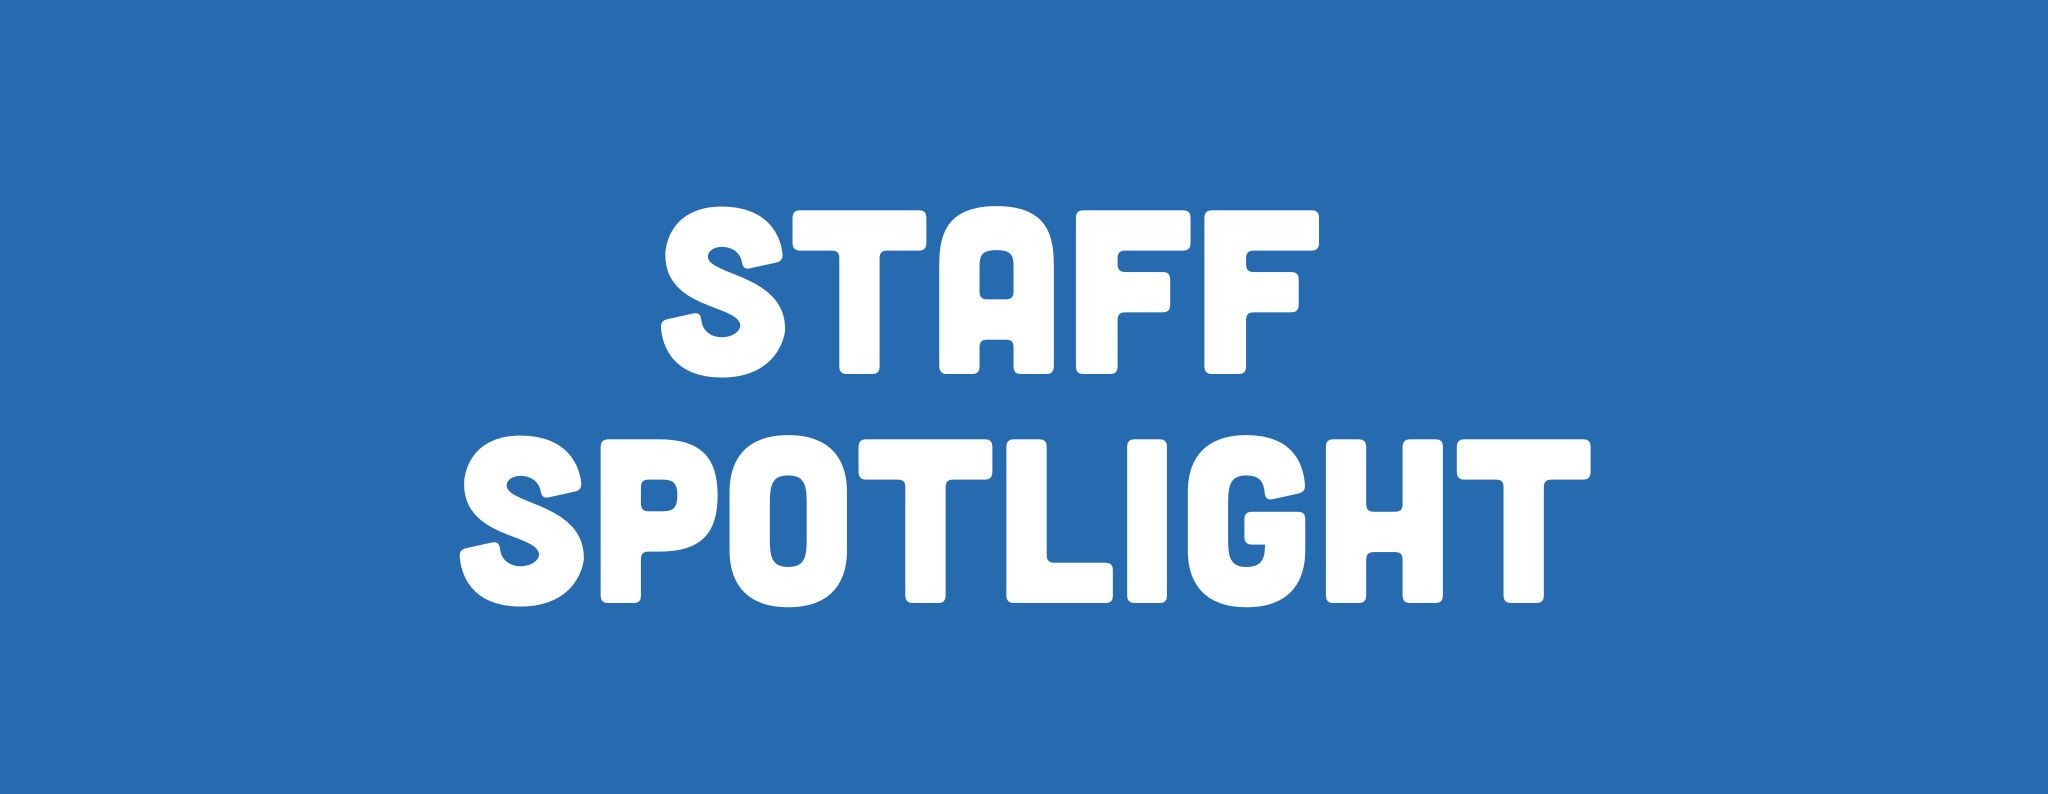 Staff Spotlight: Managing Director Dan Summins!